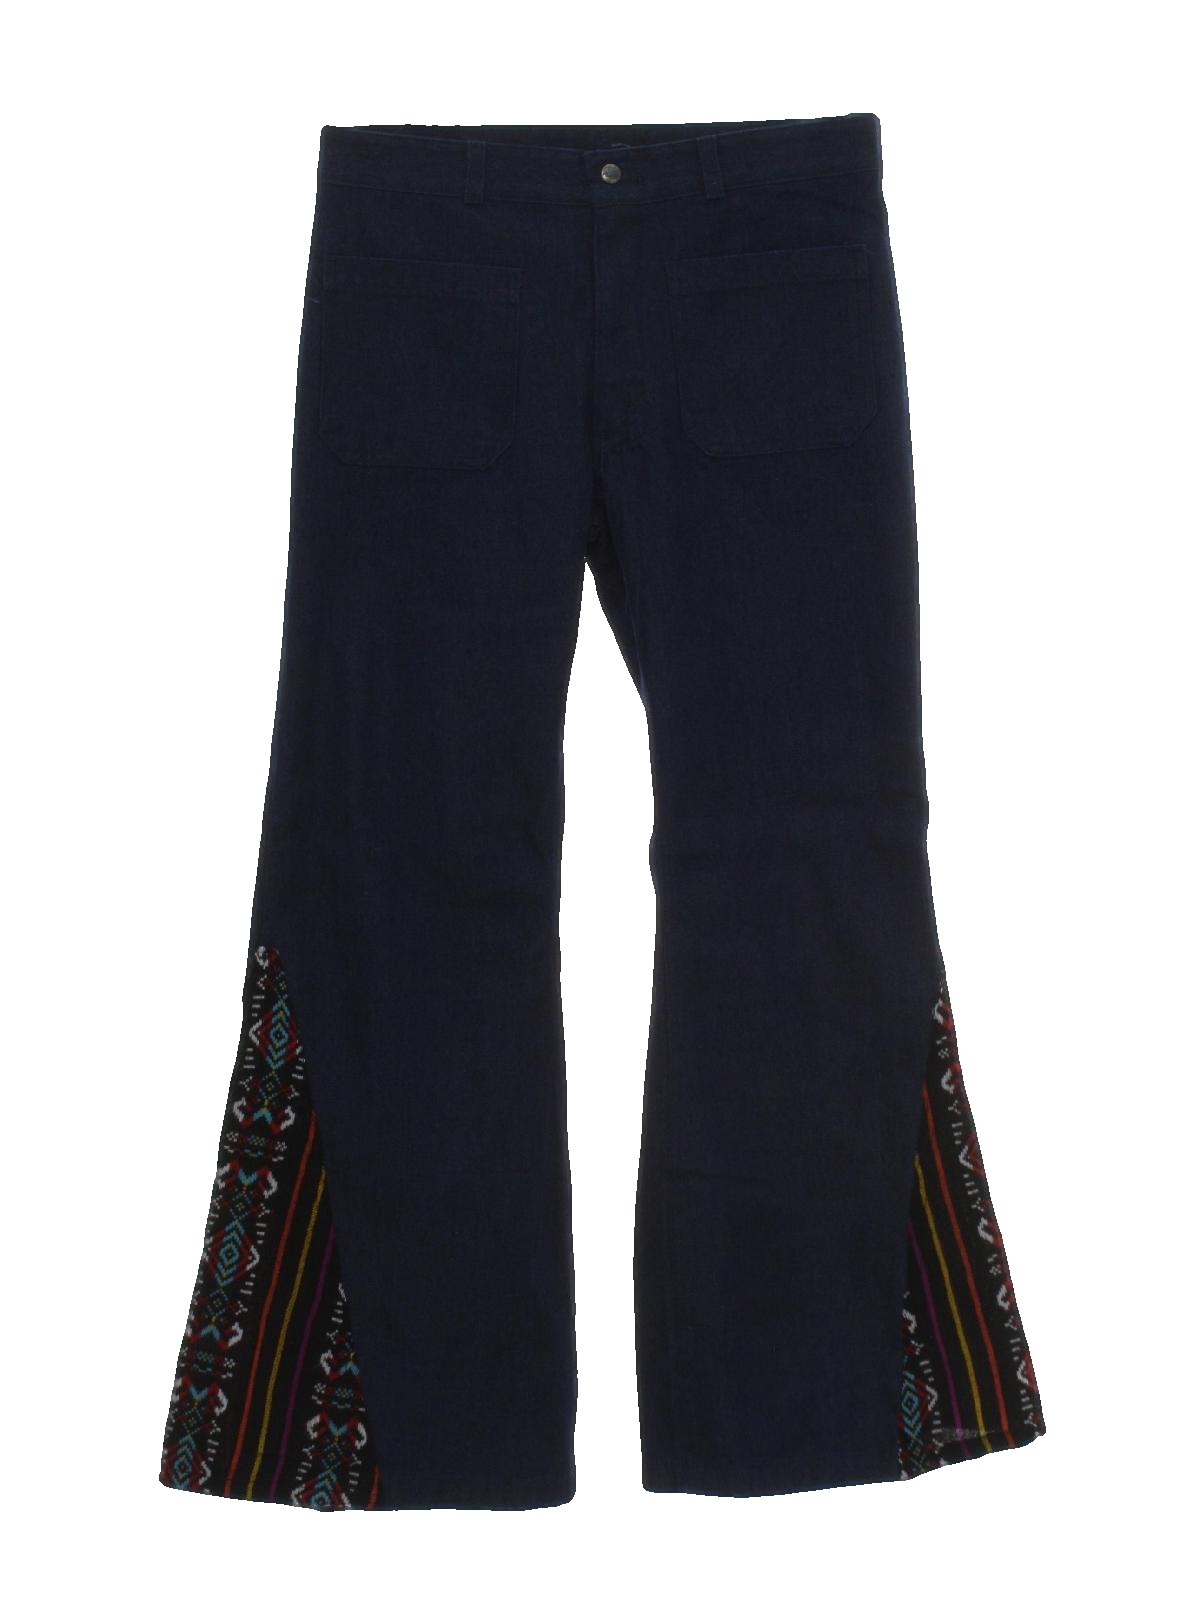 Seventies Vintage Bellbottom Pants: 70s style -Seafarer- Mens dark blue ...